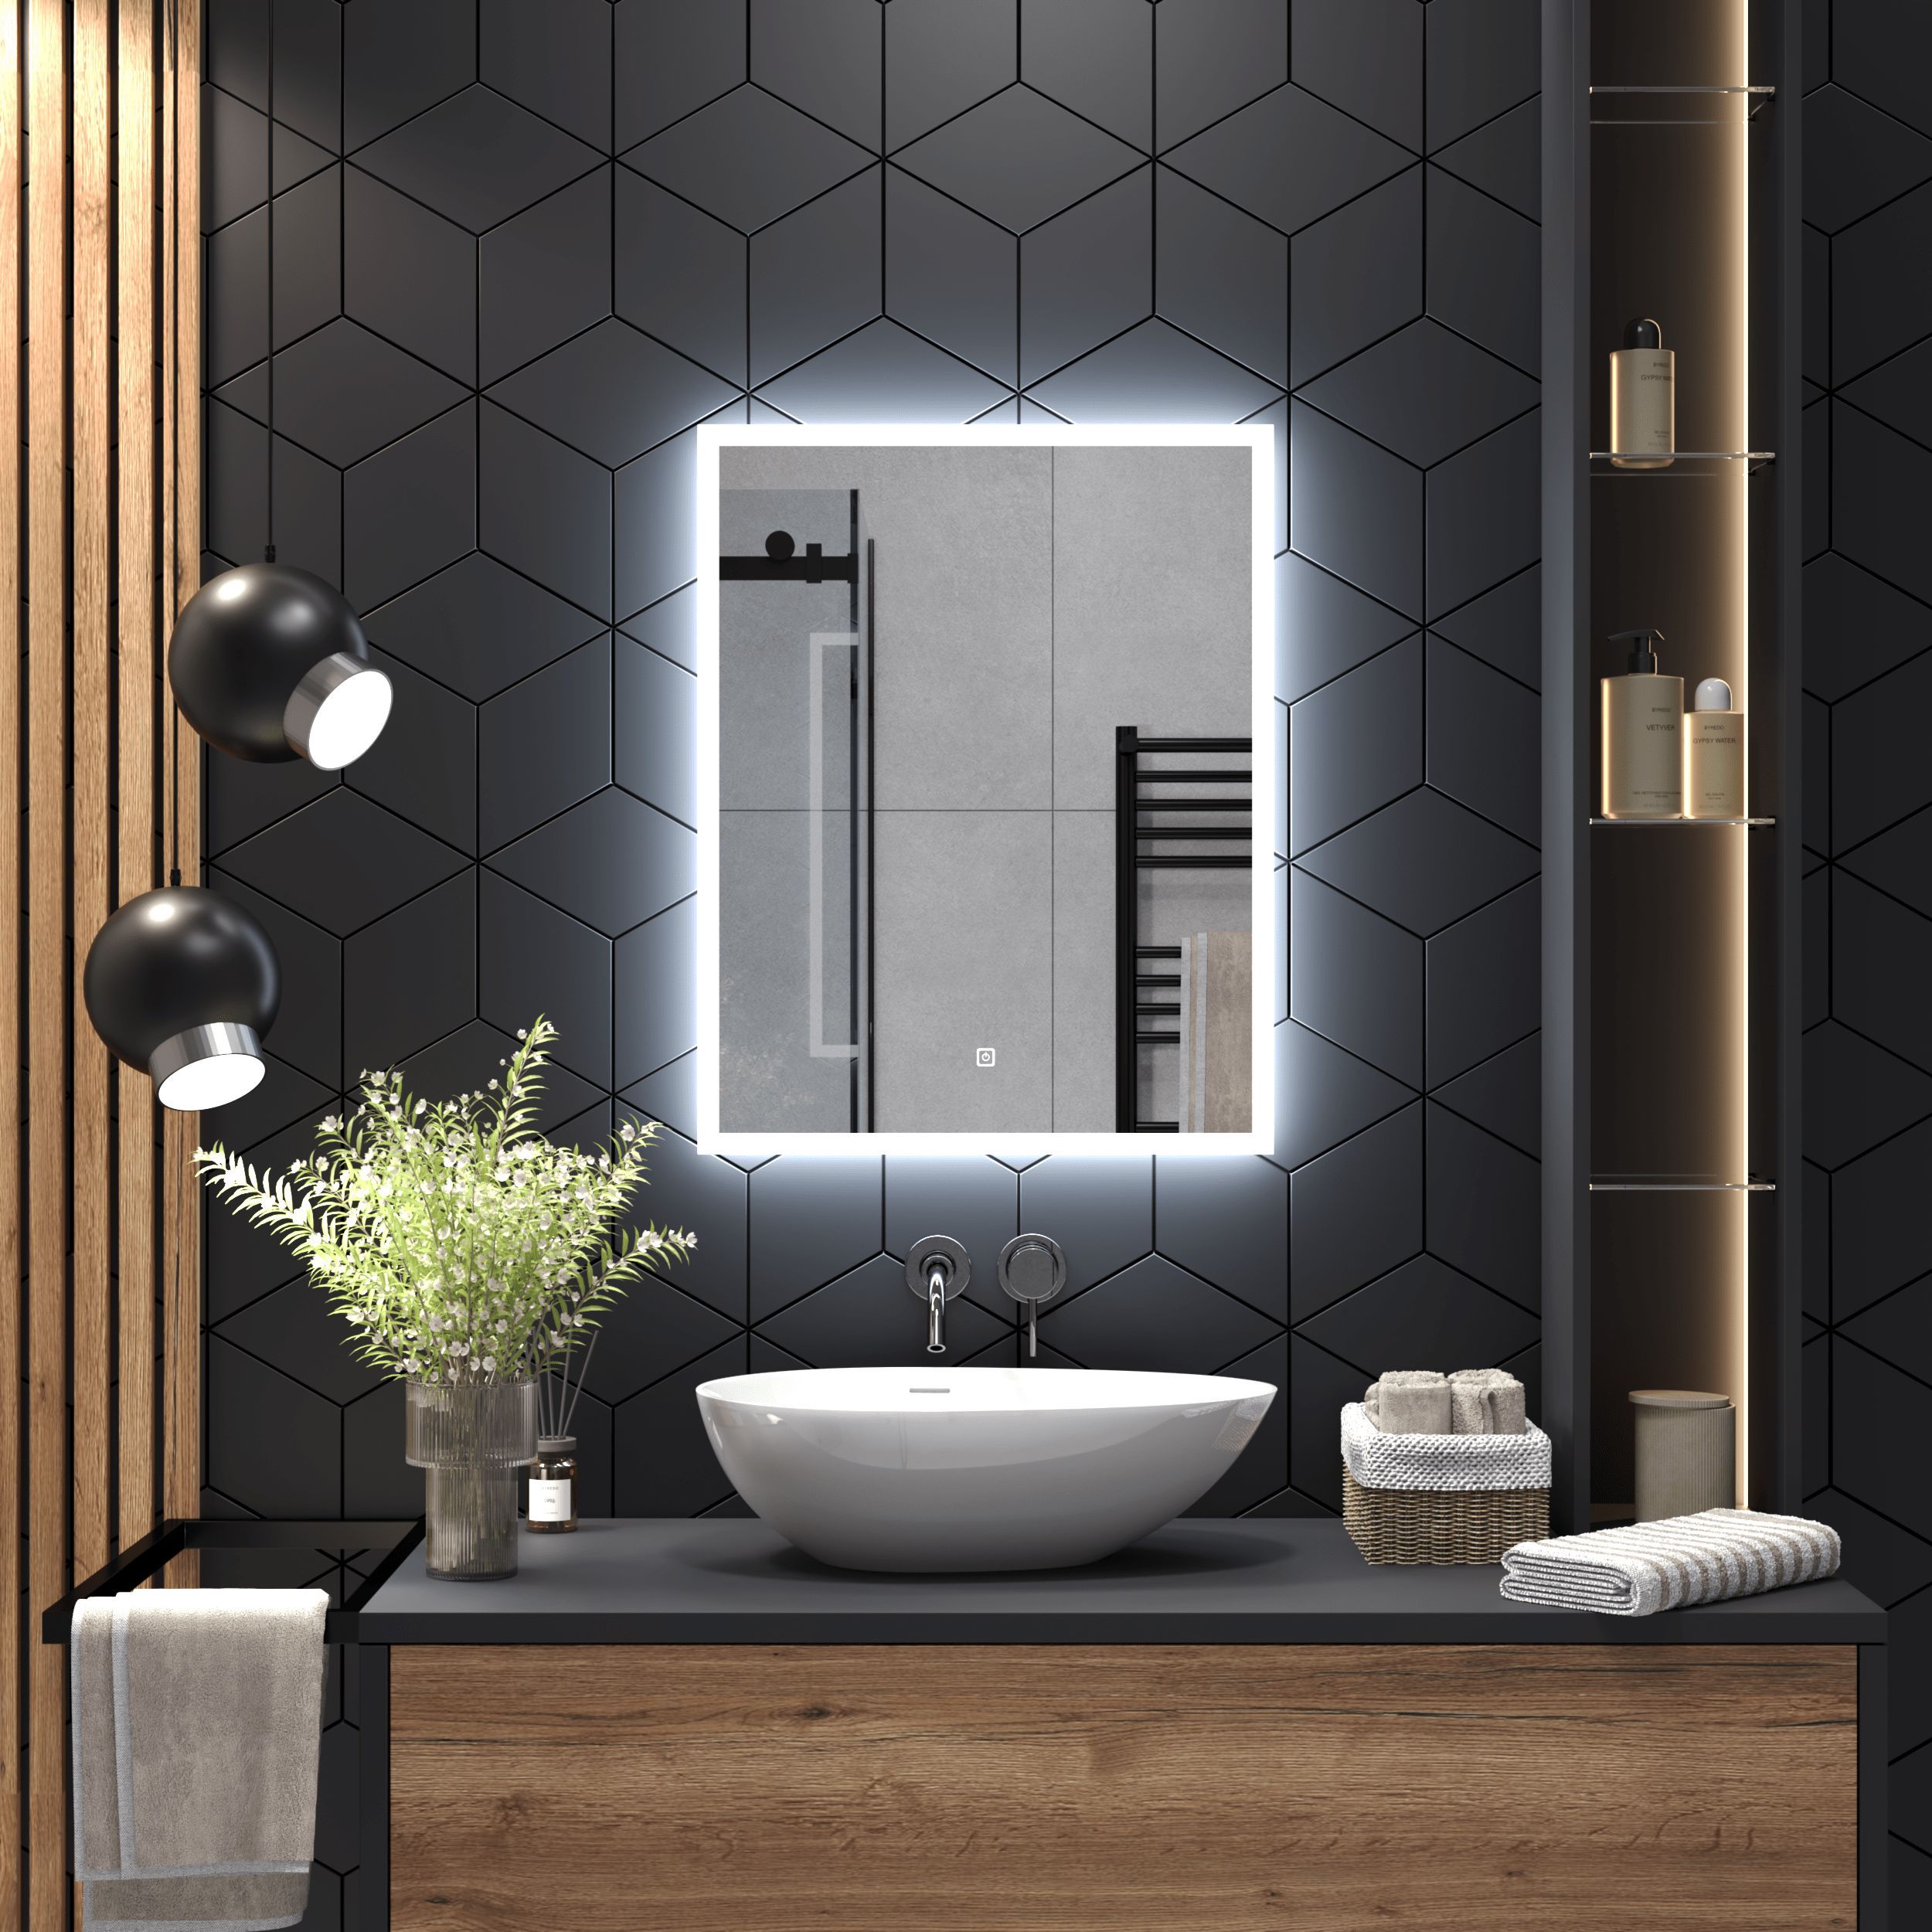 Дизайн зеркала в ванной комнате — встроенное в плитку и выдвижное